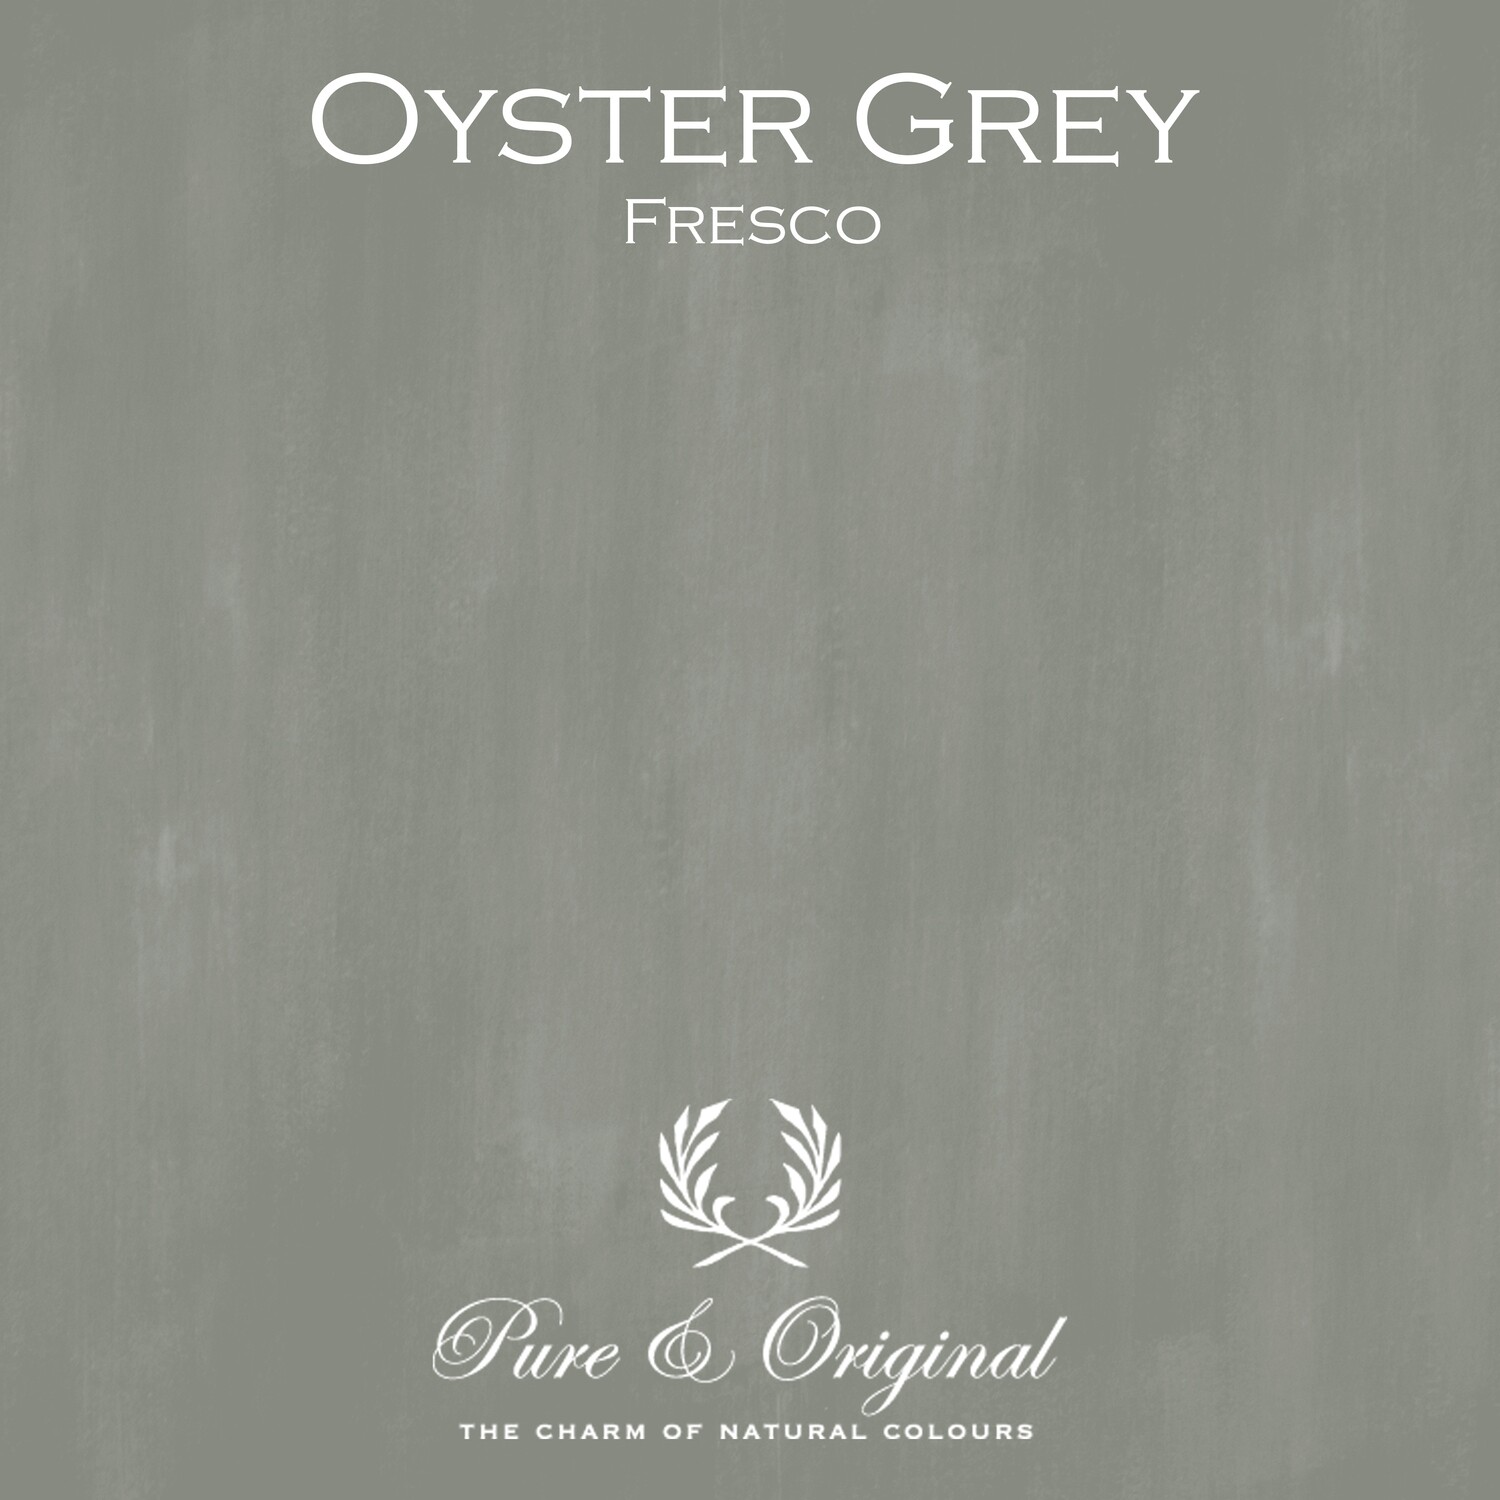 Oyster Grey Fresco